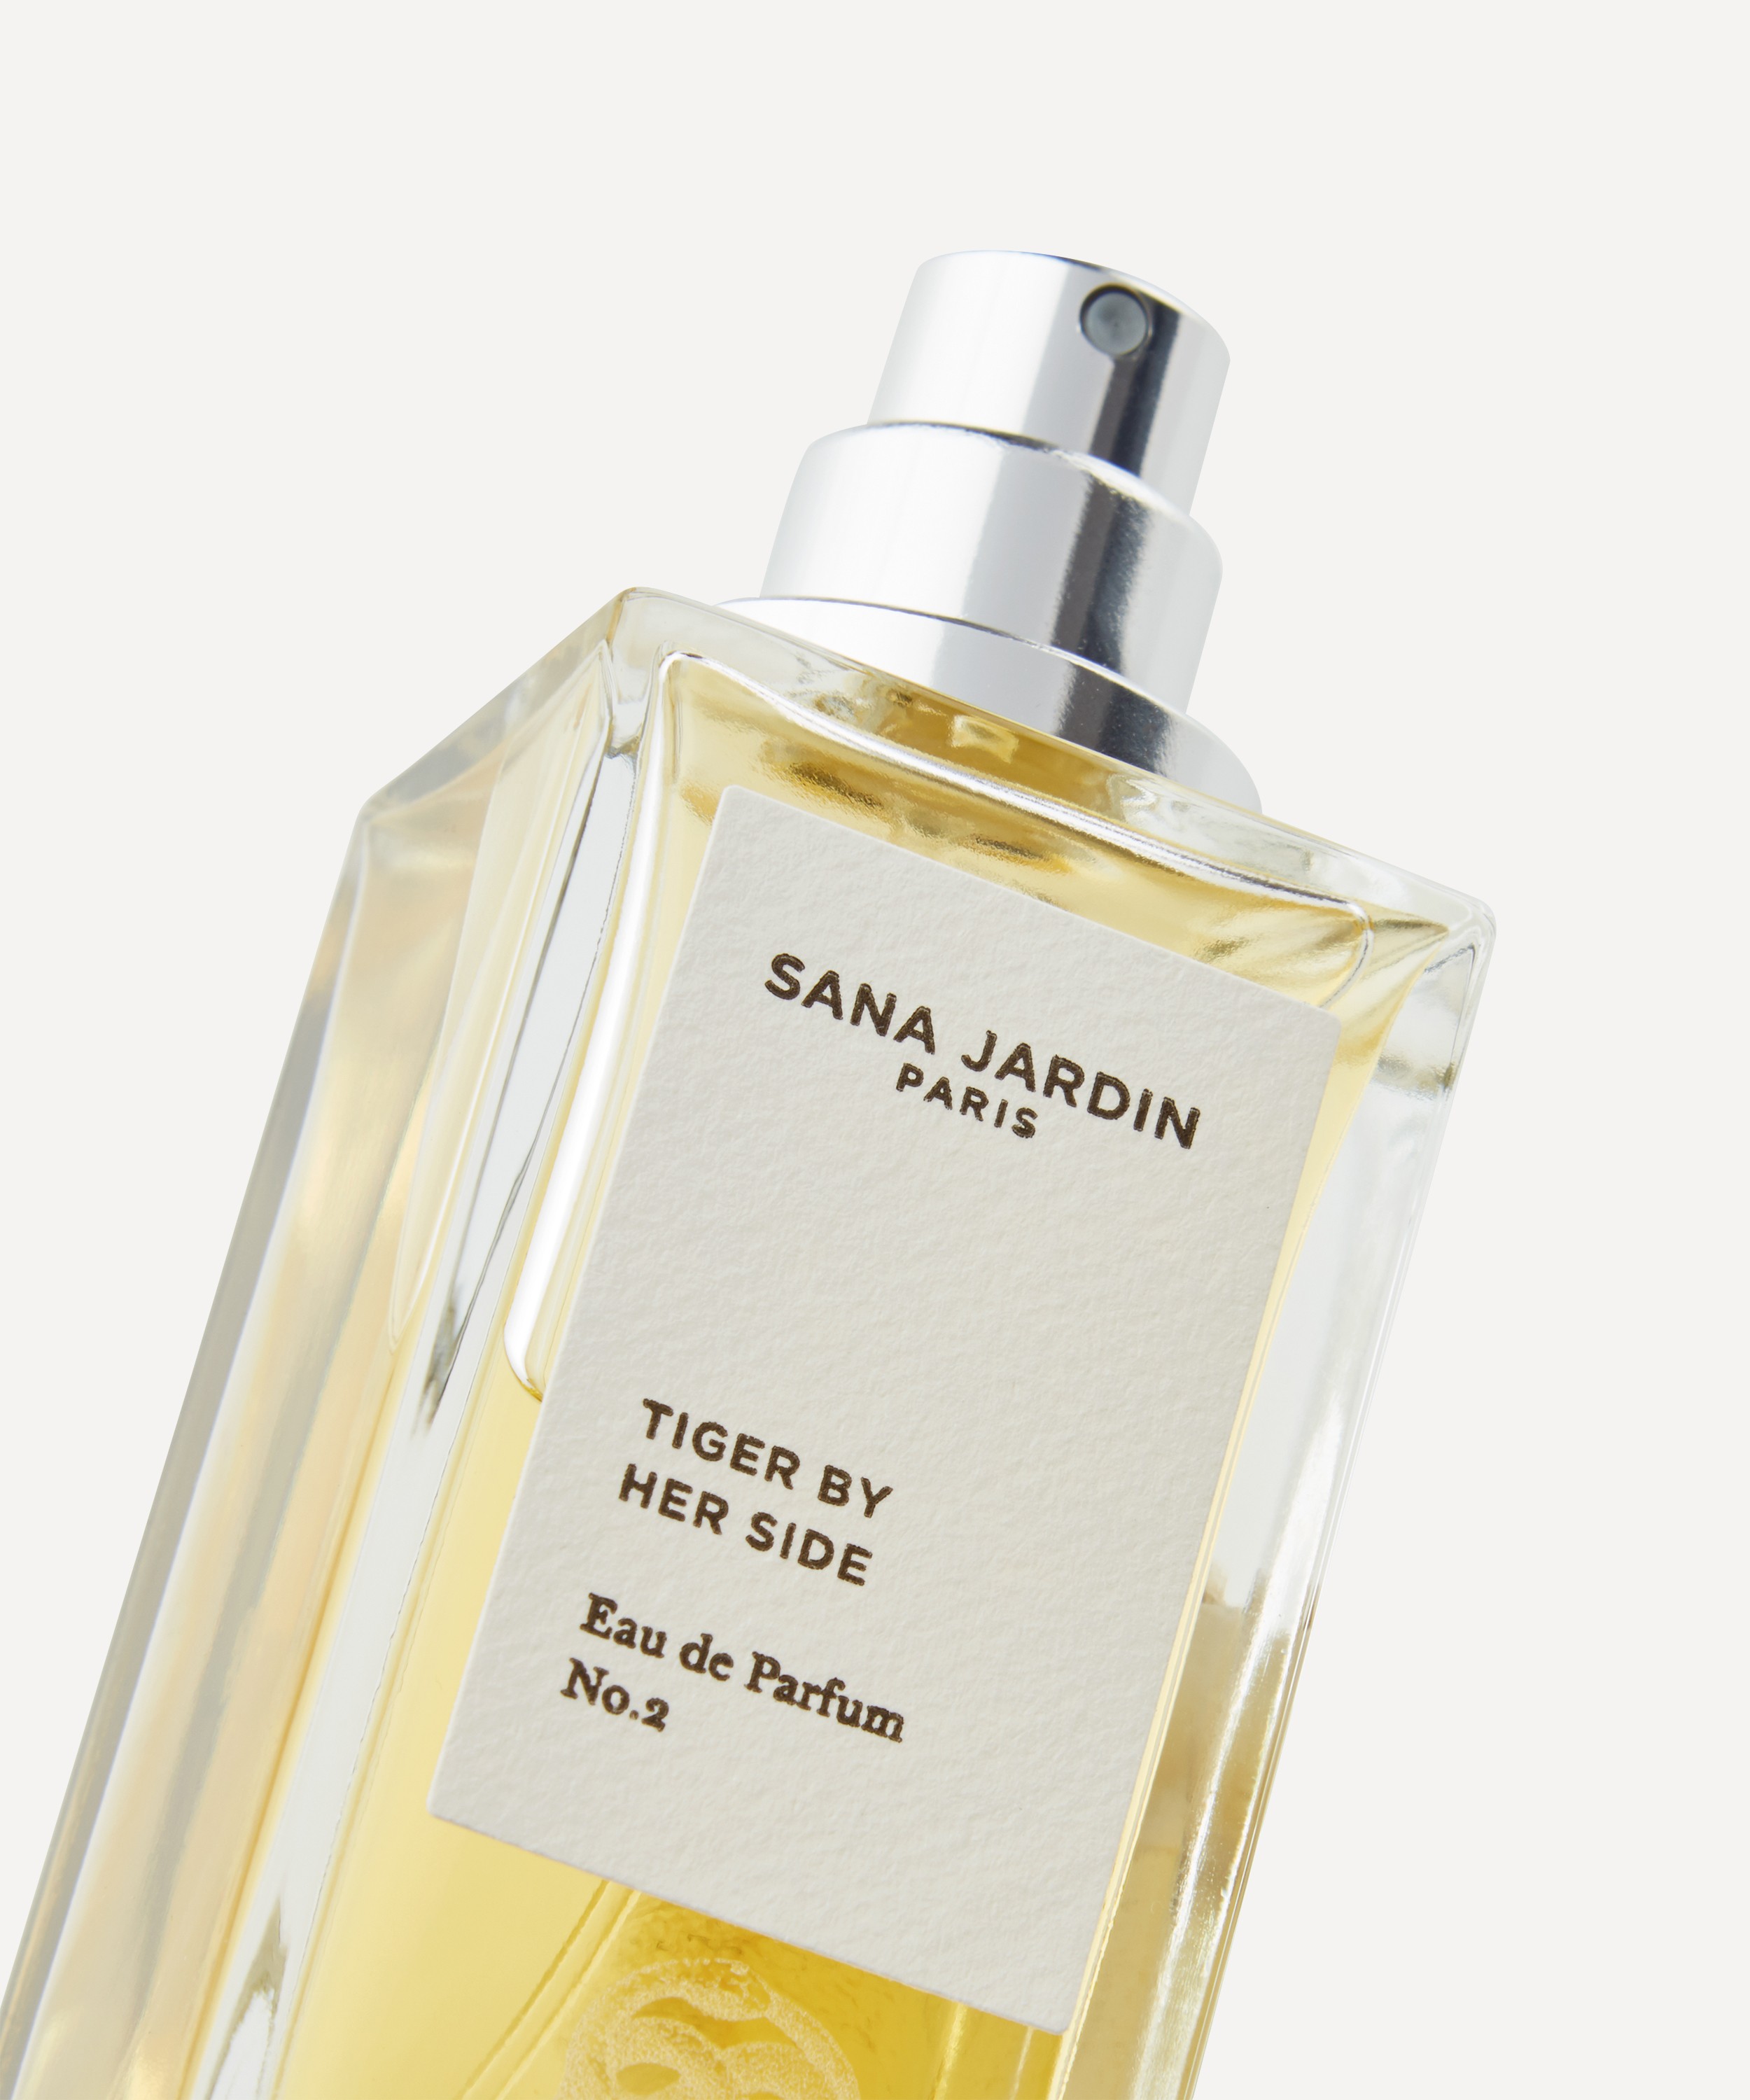 Sana Jardin - Tiger By Her Side Eau de Parfum No. 2 50ml image number 1